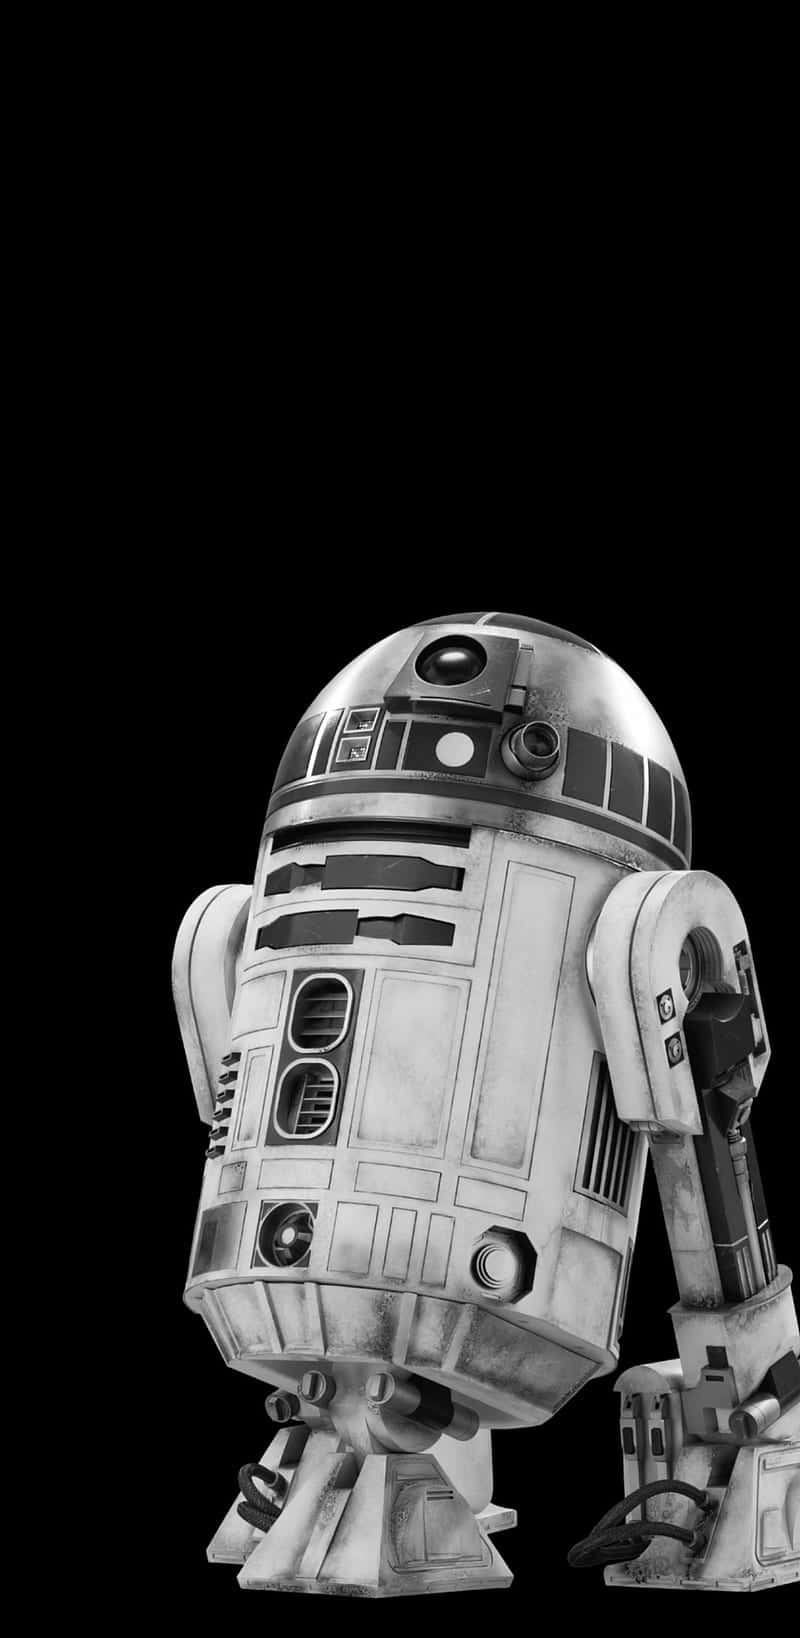 Den ikoniske R2-D2-robottegn fra Star Wars er vist på denne tapet. Wallpaper